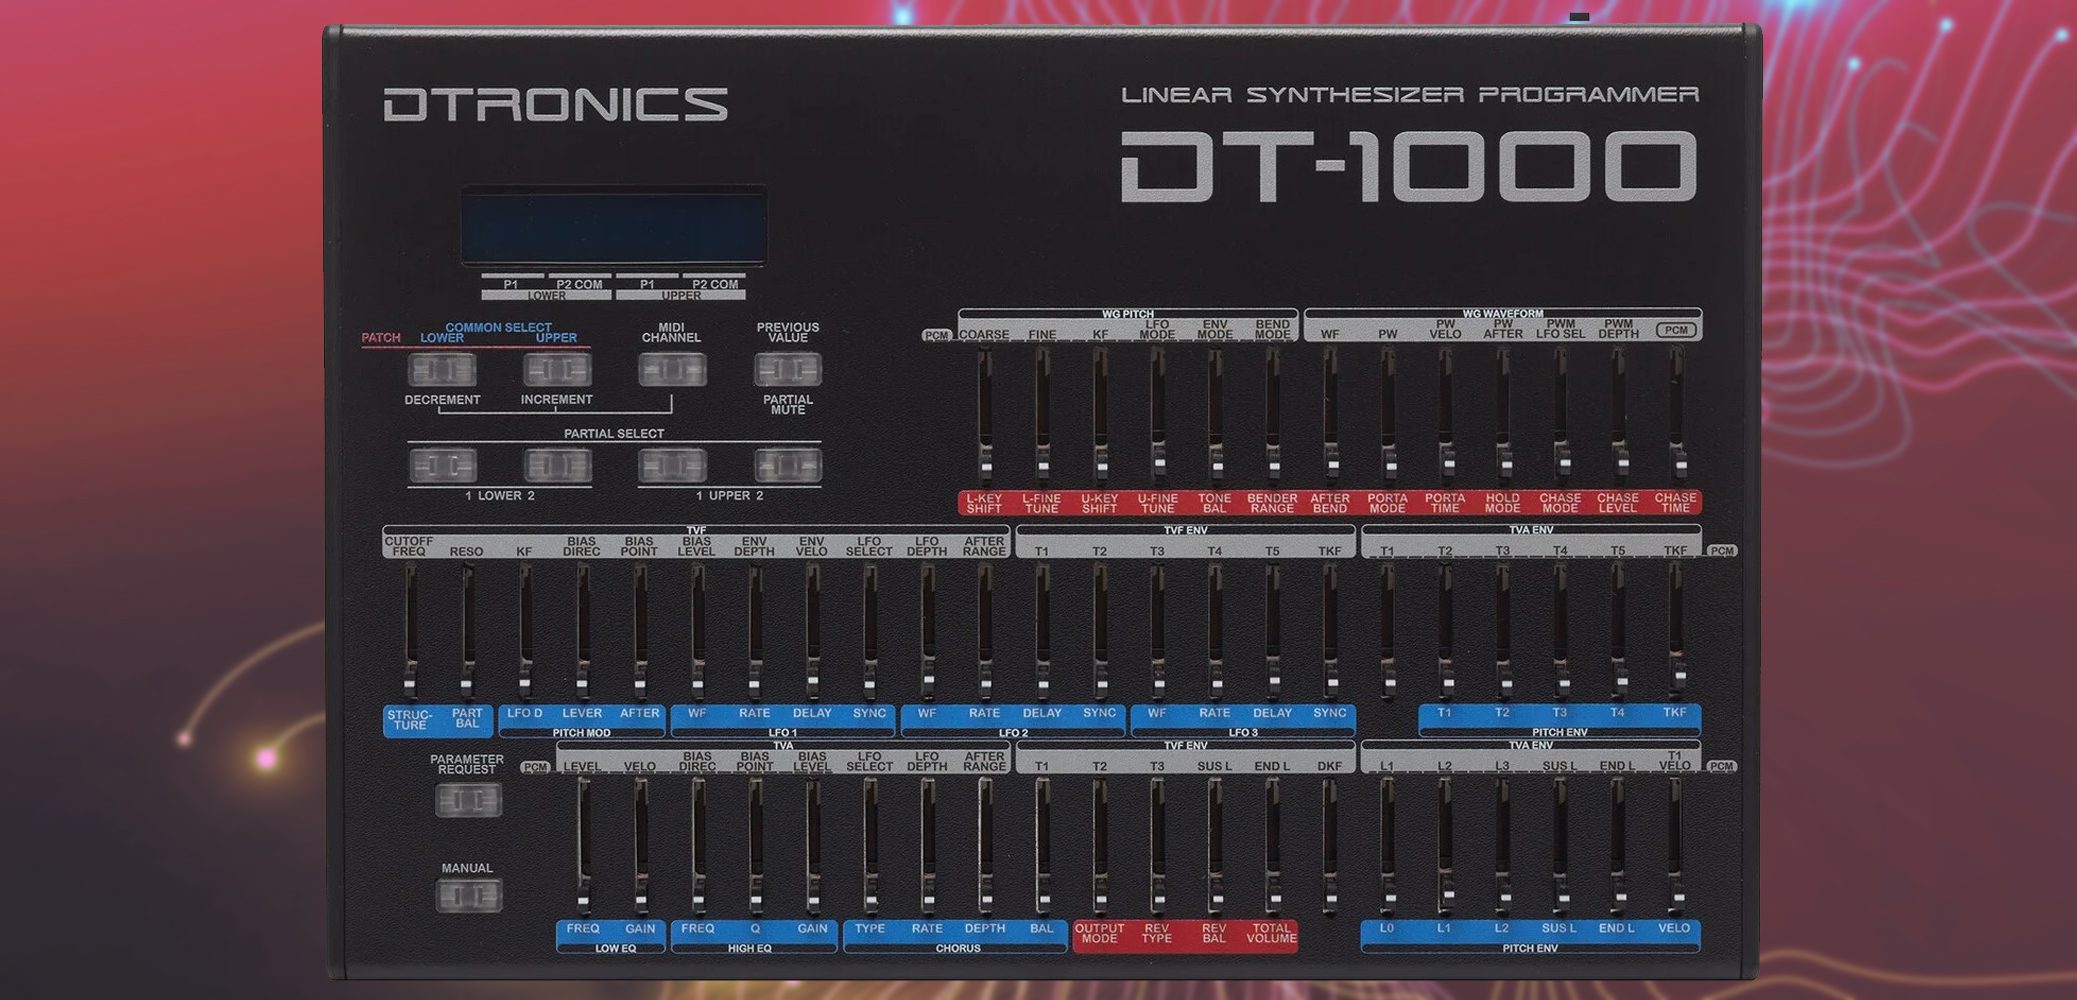 dtronics dt-1000 programmer